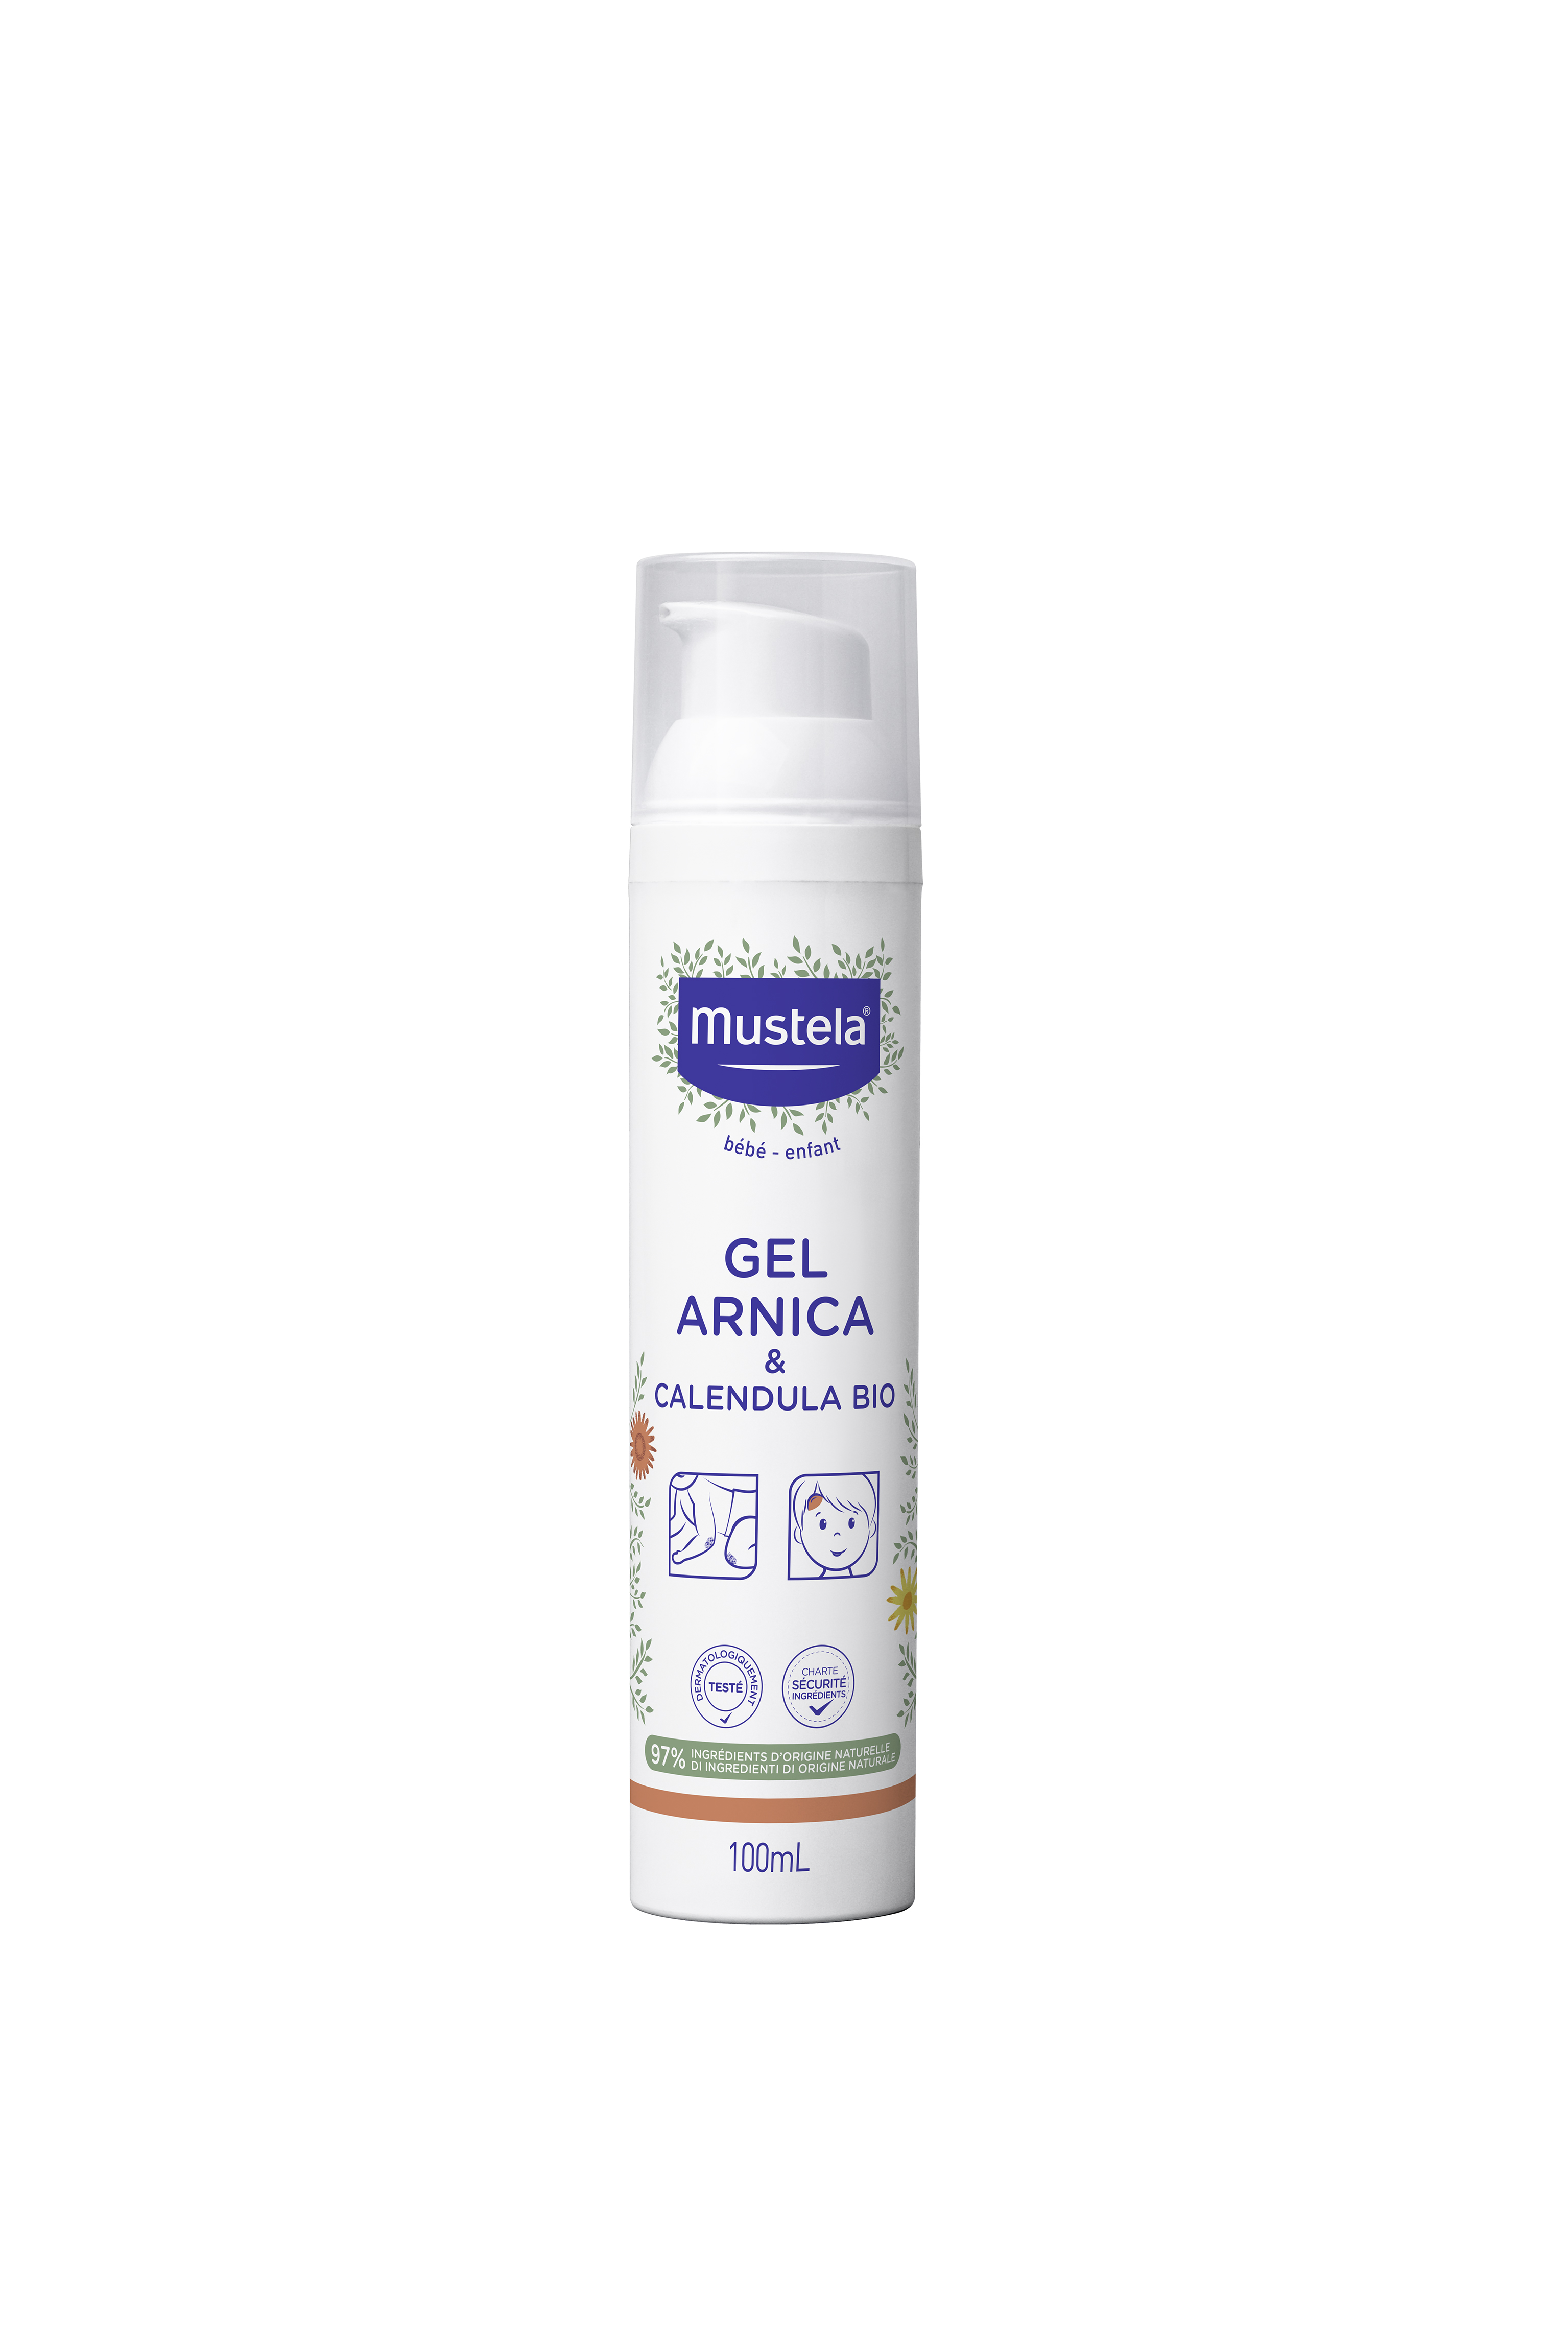 Arnica gel with Organic calendula